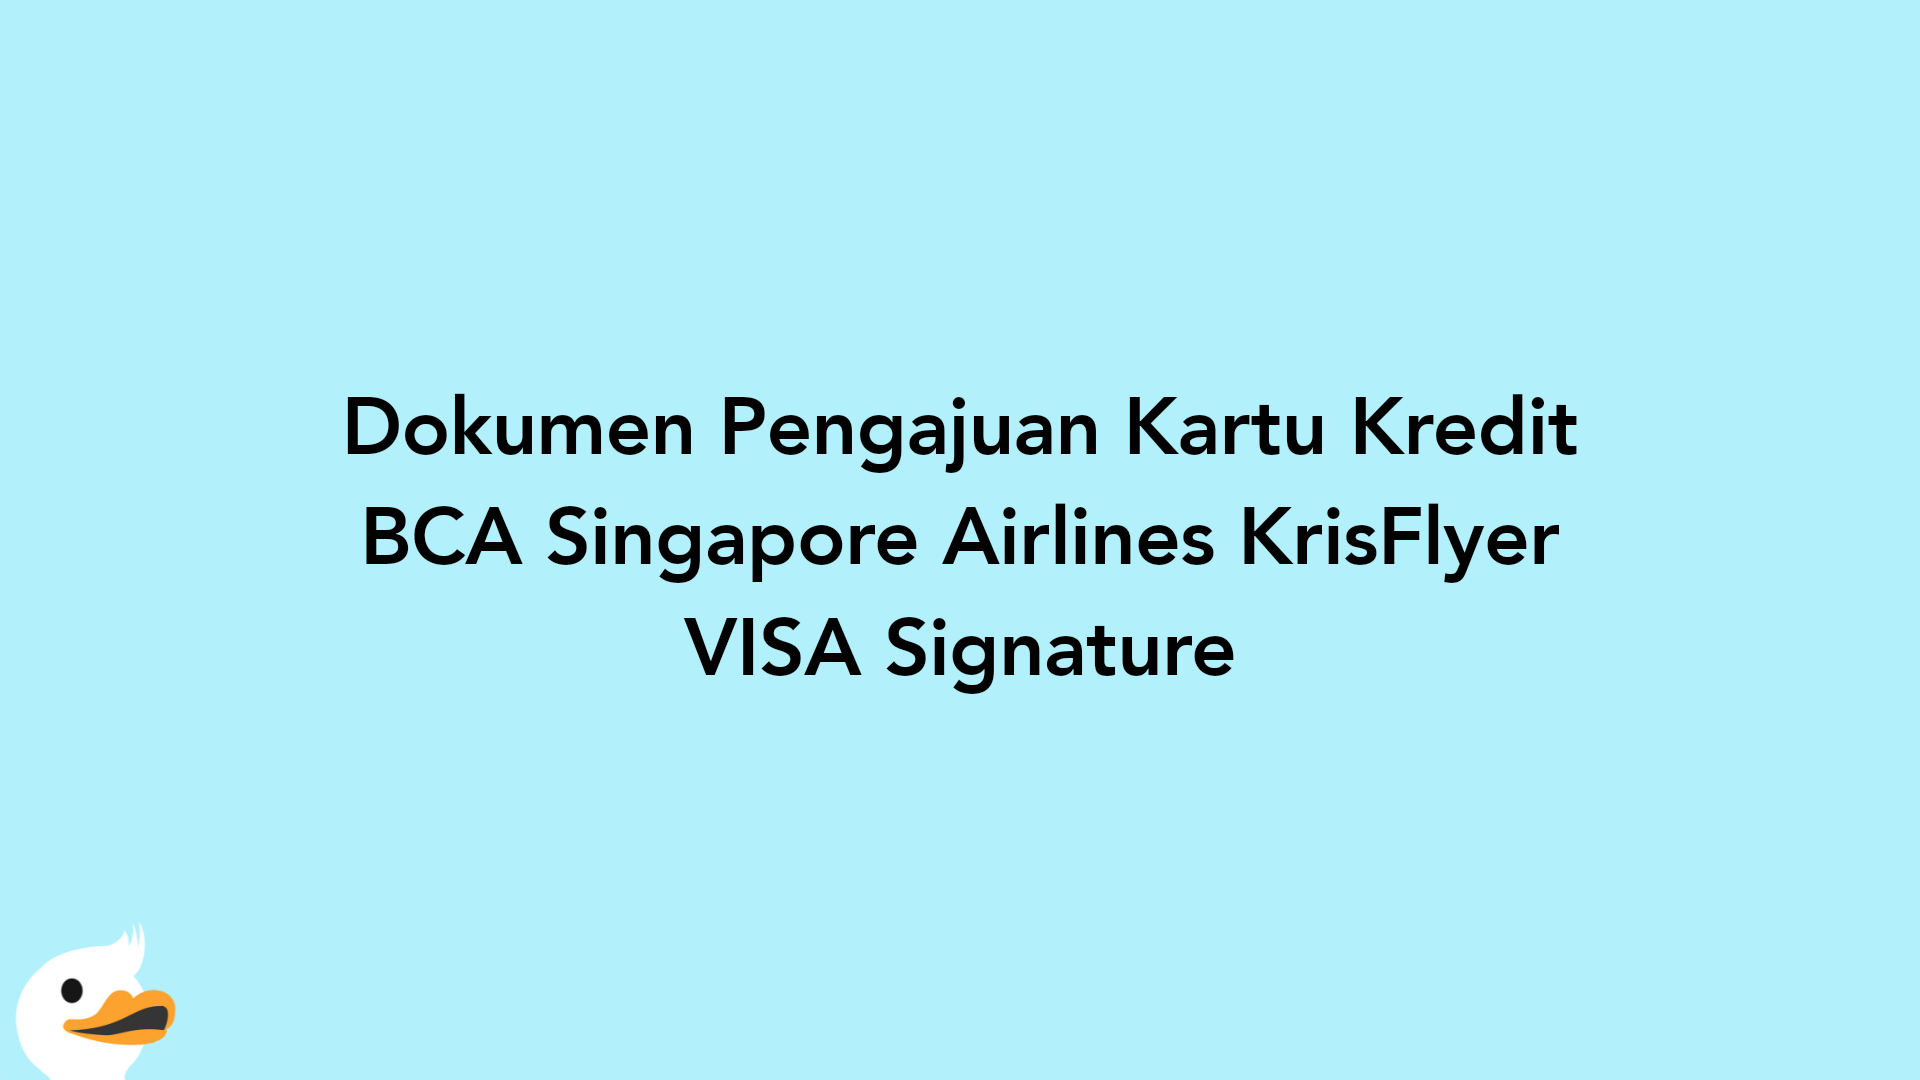 Dokumen Pengajuan Kartu Kredit BCA Singapore Airlines KrisFlyer VISA Signature